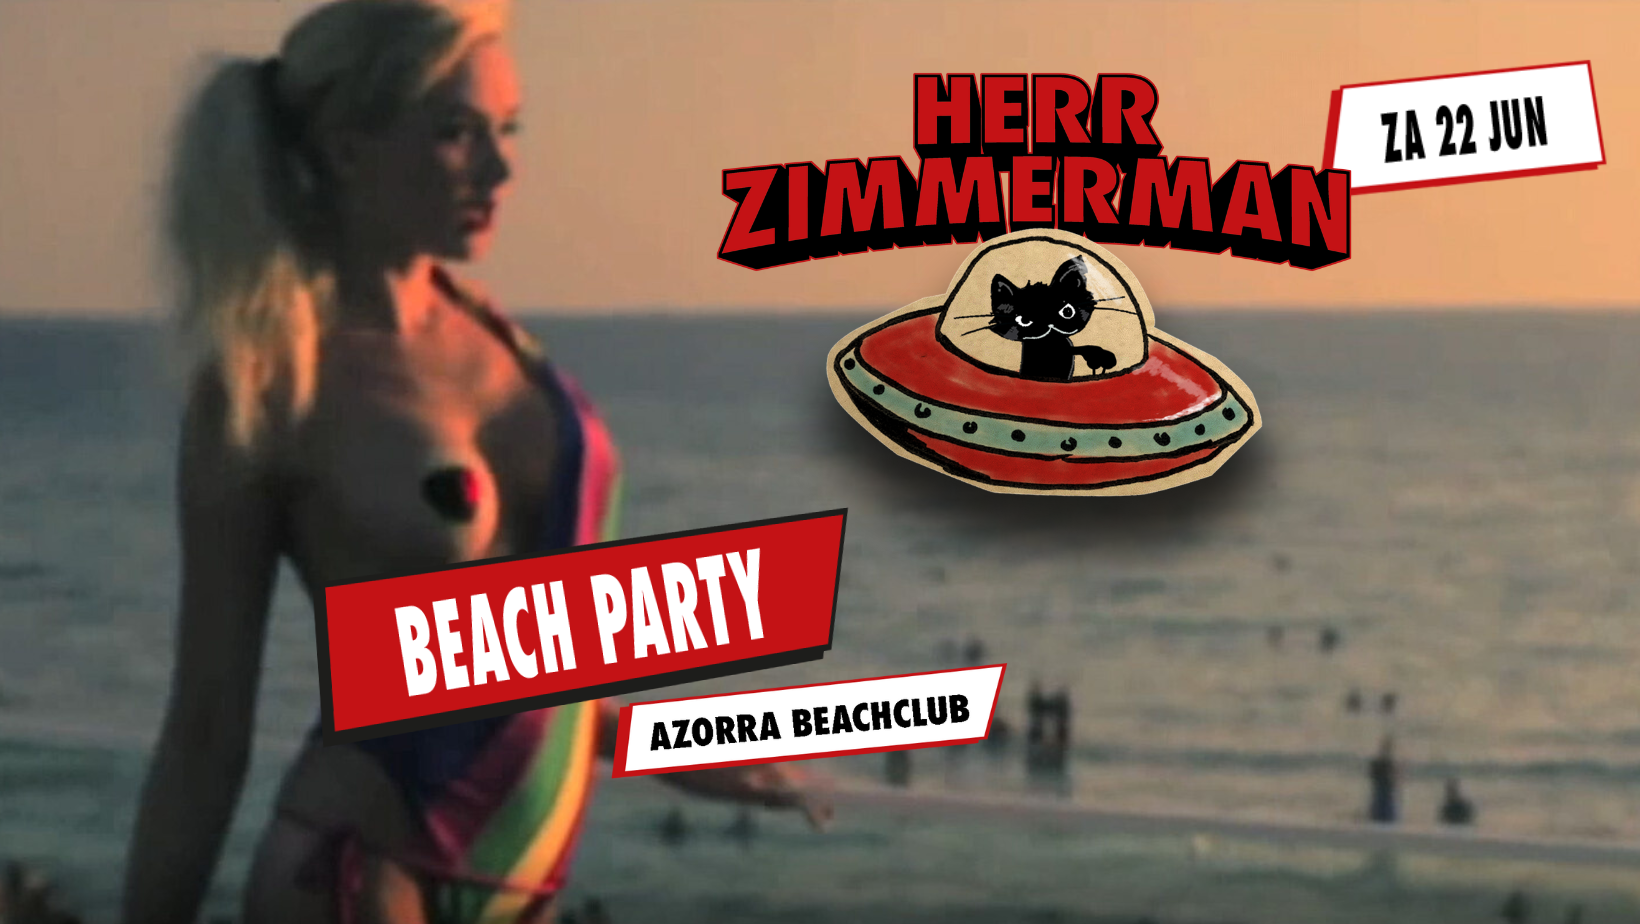 Herr Zimmerman BEACH PARTY - フライヤー裏